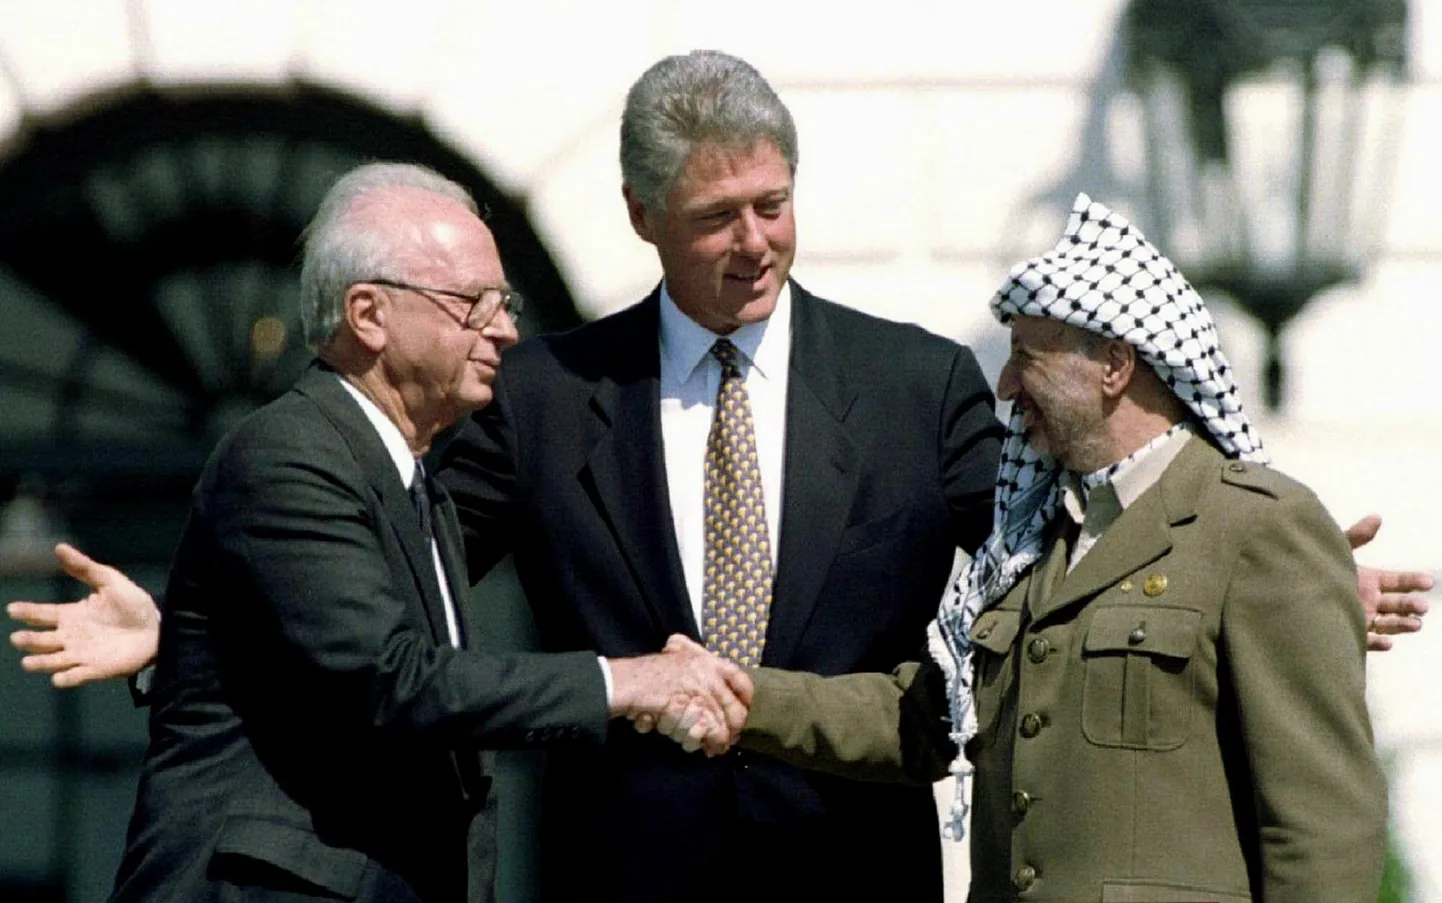 Ameerika Ühendriikide president Bill Clinton vahendas 13. septembril 1993 Valge Majas Iisraeli peaministri Yitzhak Rabini ja Palestiina Vabastusorganisatsiooni juhi Yasser Arafati ajaluku läinud kohtumist ja käesurumist.